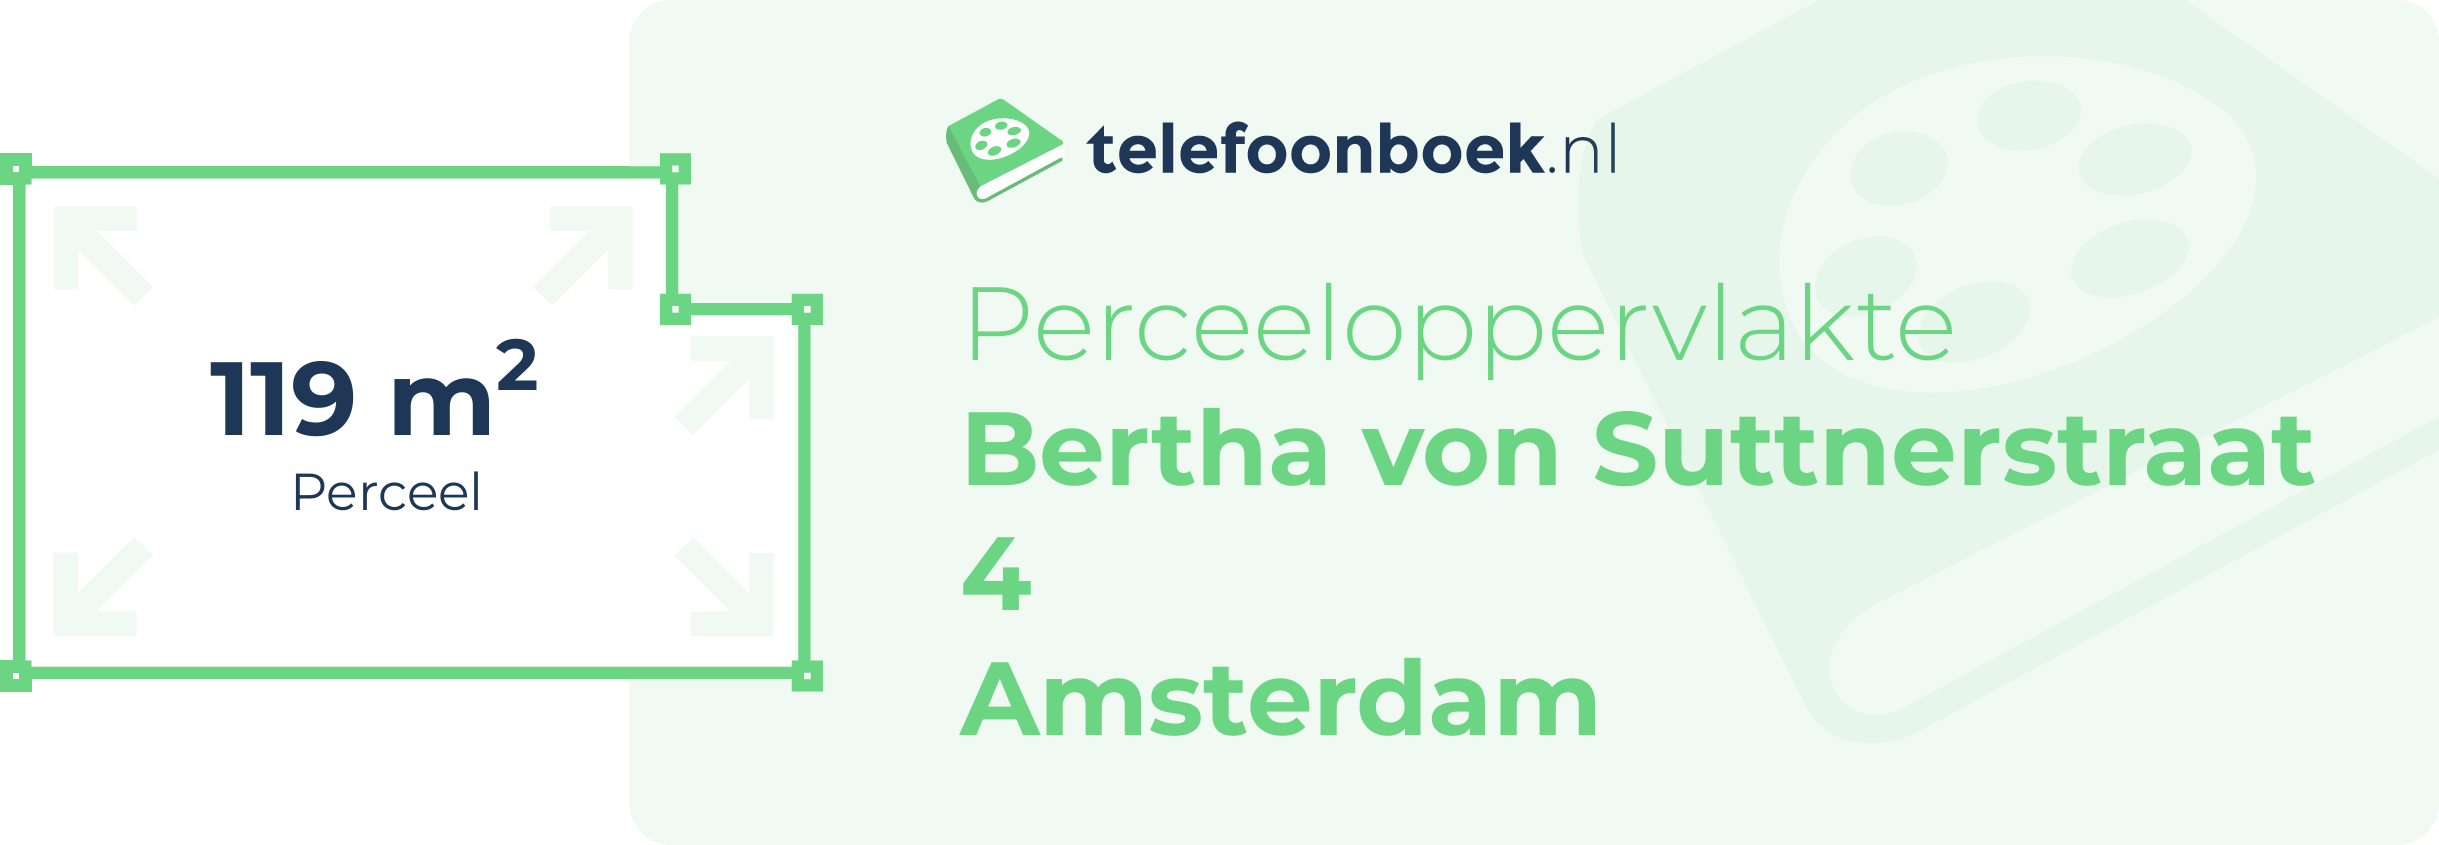 Perceeloppervlakte Bertha Von Suttnerstraat 4 Amsterdam